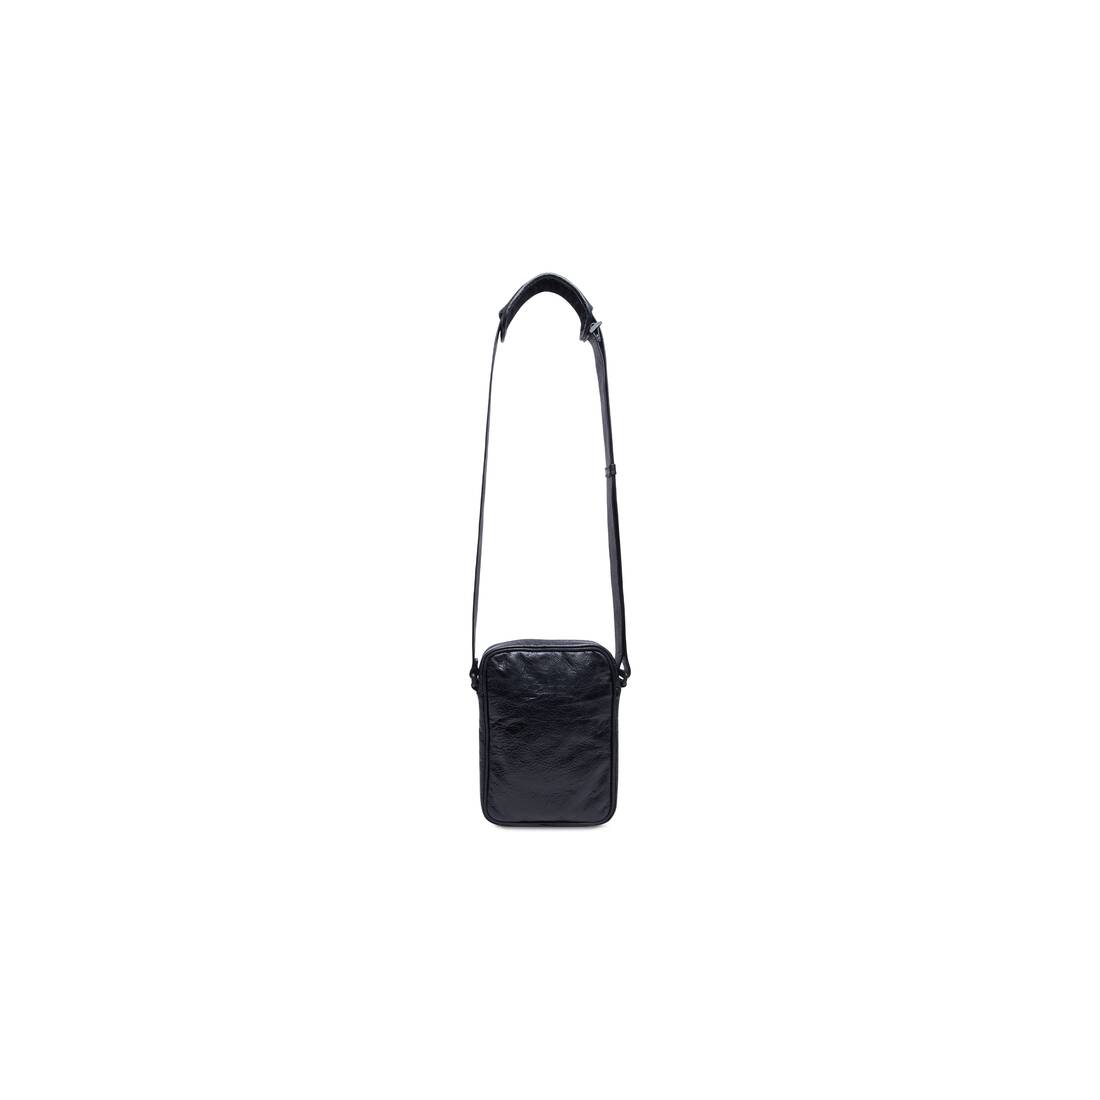 Balenciaga / Adidas スモールクロスボディメッセンジャーバッグ のために メンズ で ブラック